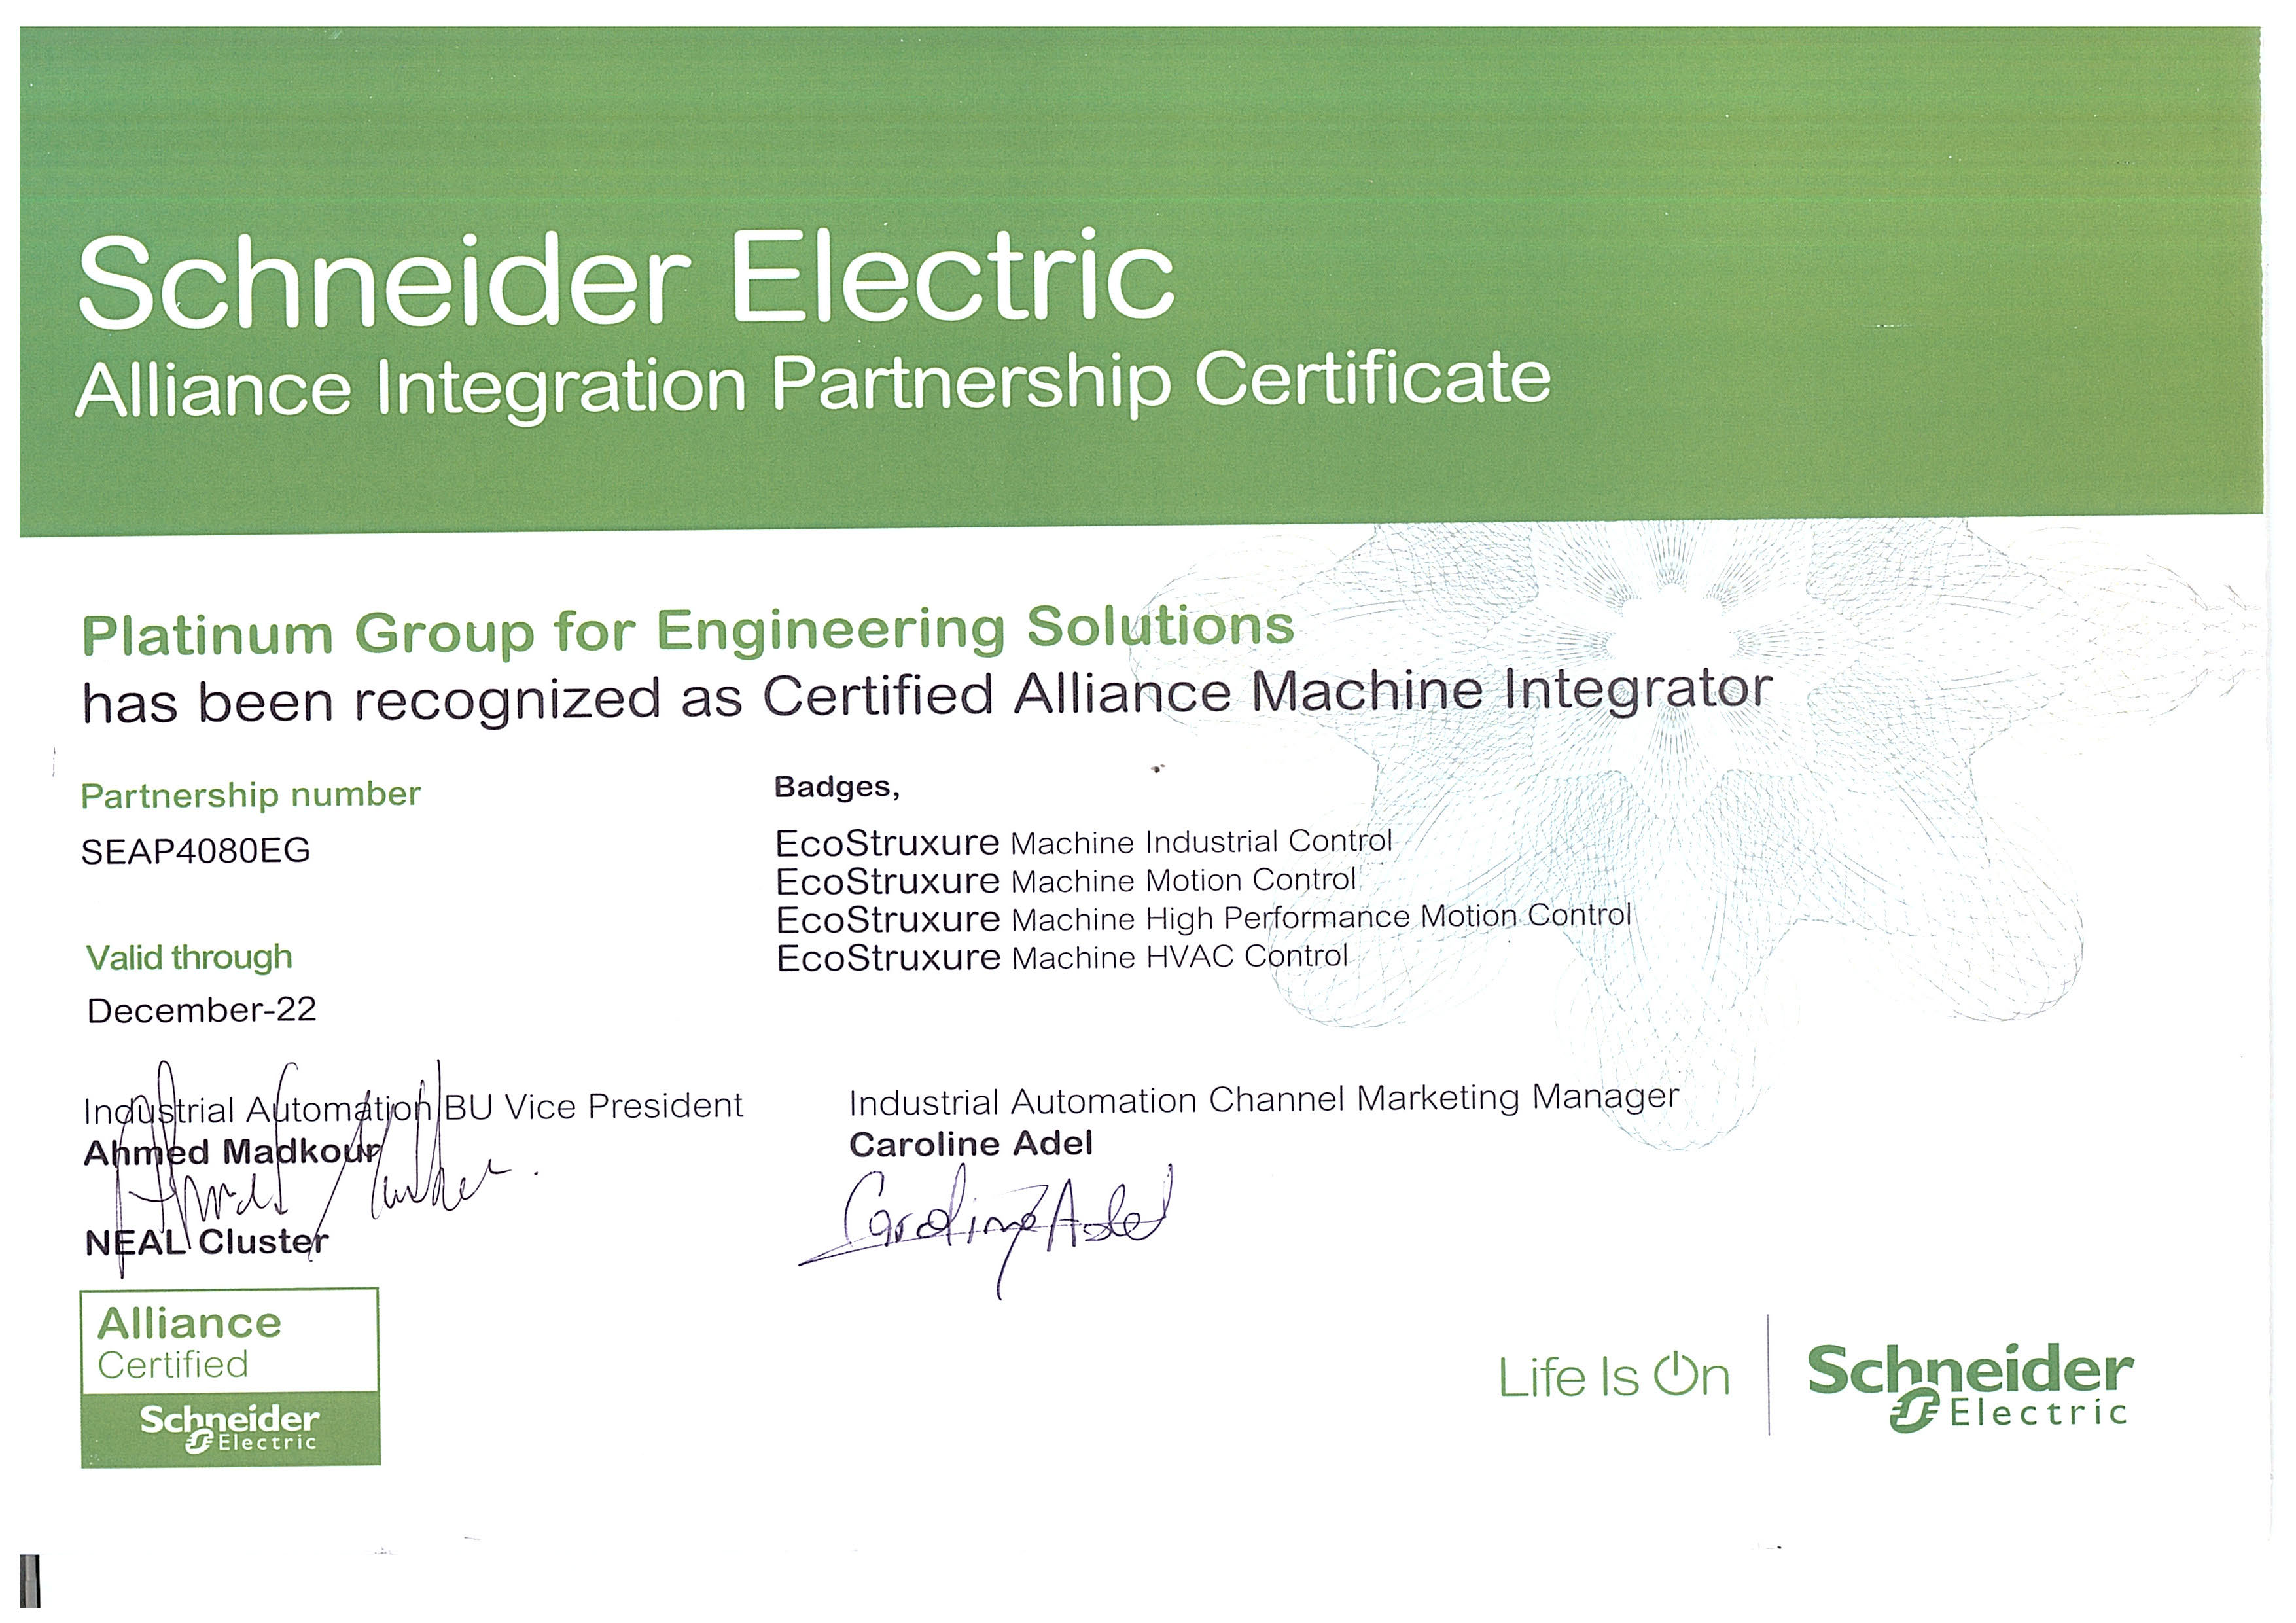 Alliance certified partner of Schneider and machine integrator.